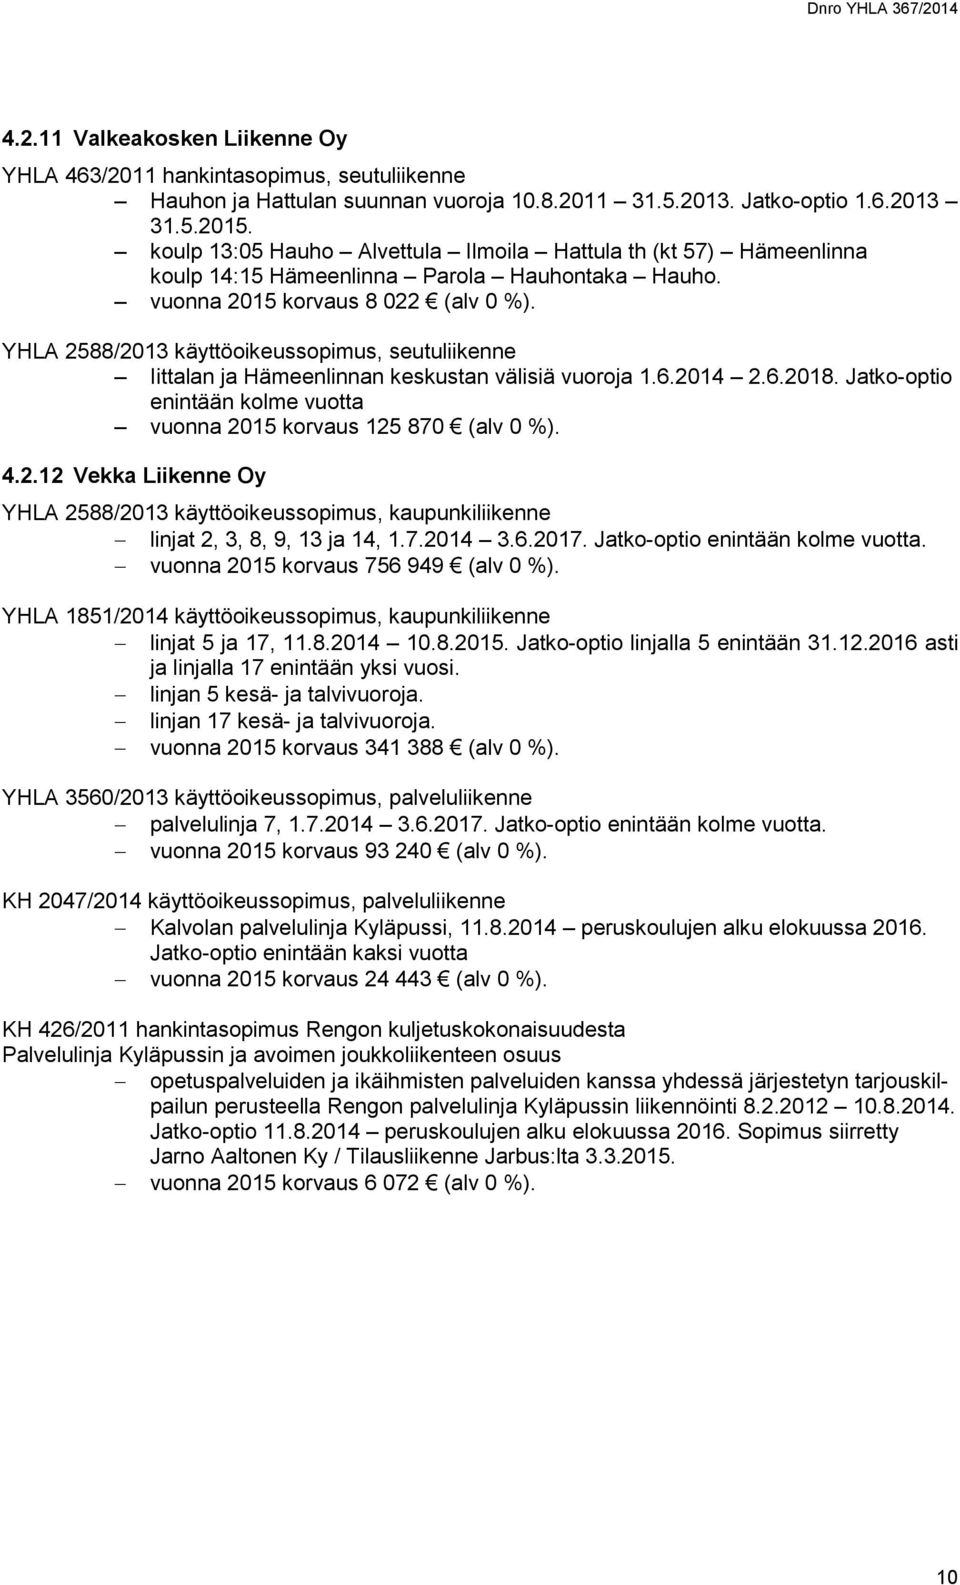 YHLA 2588/2013 käyttöoikeussopimus, seutuliikenne Iittalan ja Hämeenlinnan keskustan välisiä vuoroja 1.6.2014 2.6.2018. Jatko-optio enintään kolme vuotta vuonna 2015 korvaus 125 870 (alv 0 %). 4.2.12 Vekka Liikenne Oy YHLA 2588/2013 käyttöoikeussopimus, kaupunkiliikenne linjat 2, 3, 8, 9, 13 ja 14, 1.